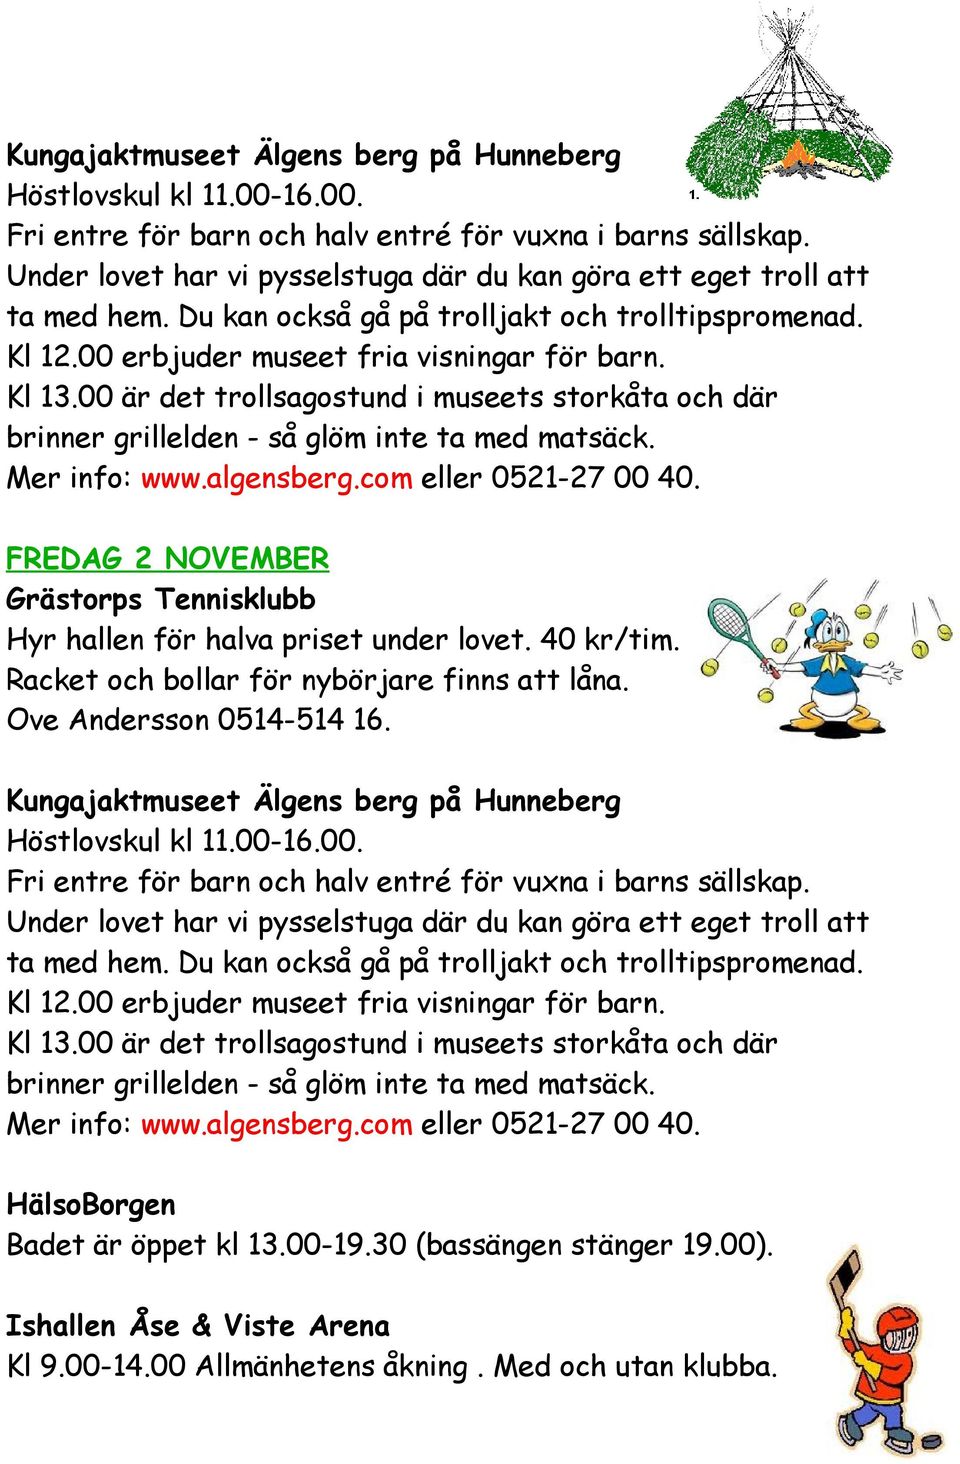 FREDAG 2 NOVEMBER Grästorps Tennisklubb  Badet är öppet kl 13.00-19.30 (bassängen stänger 19.00). Kl 9.00-14.00 Allmänhetens åkning.